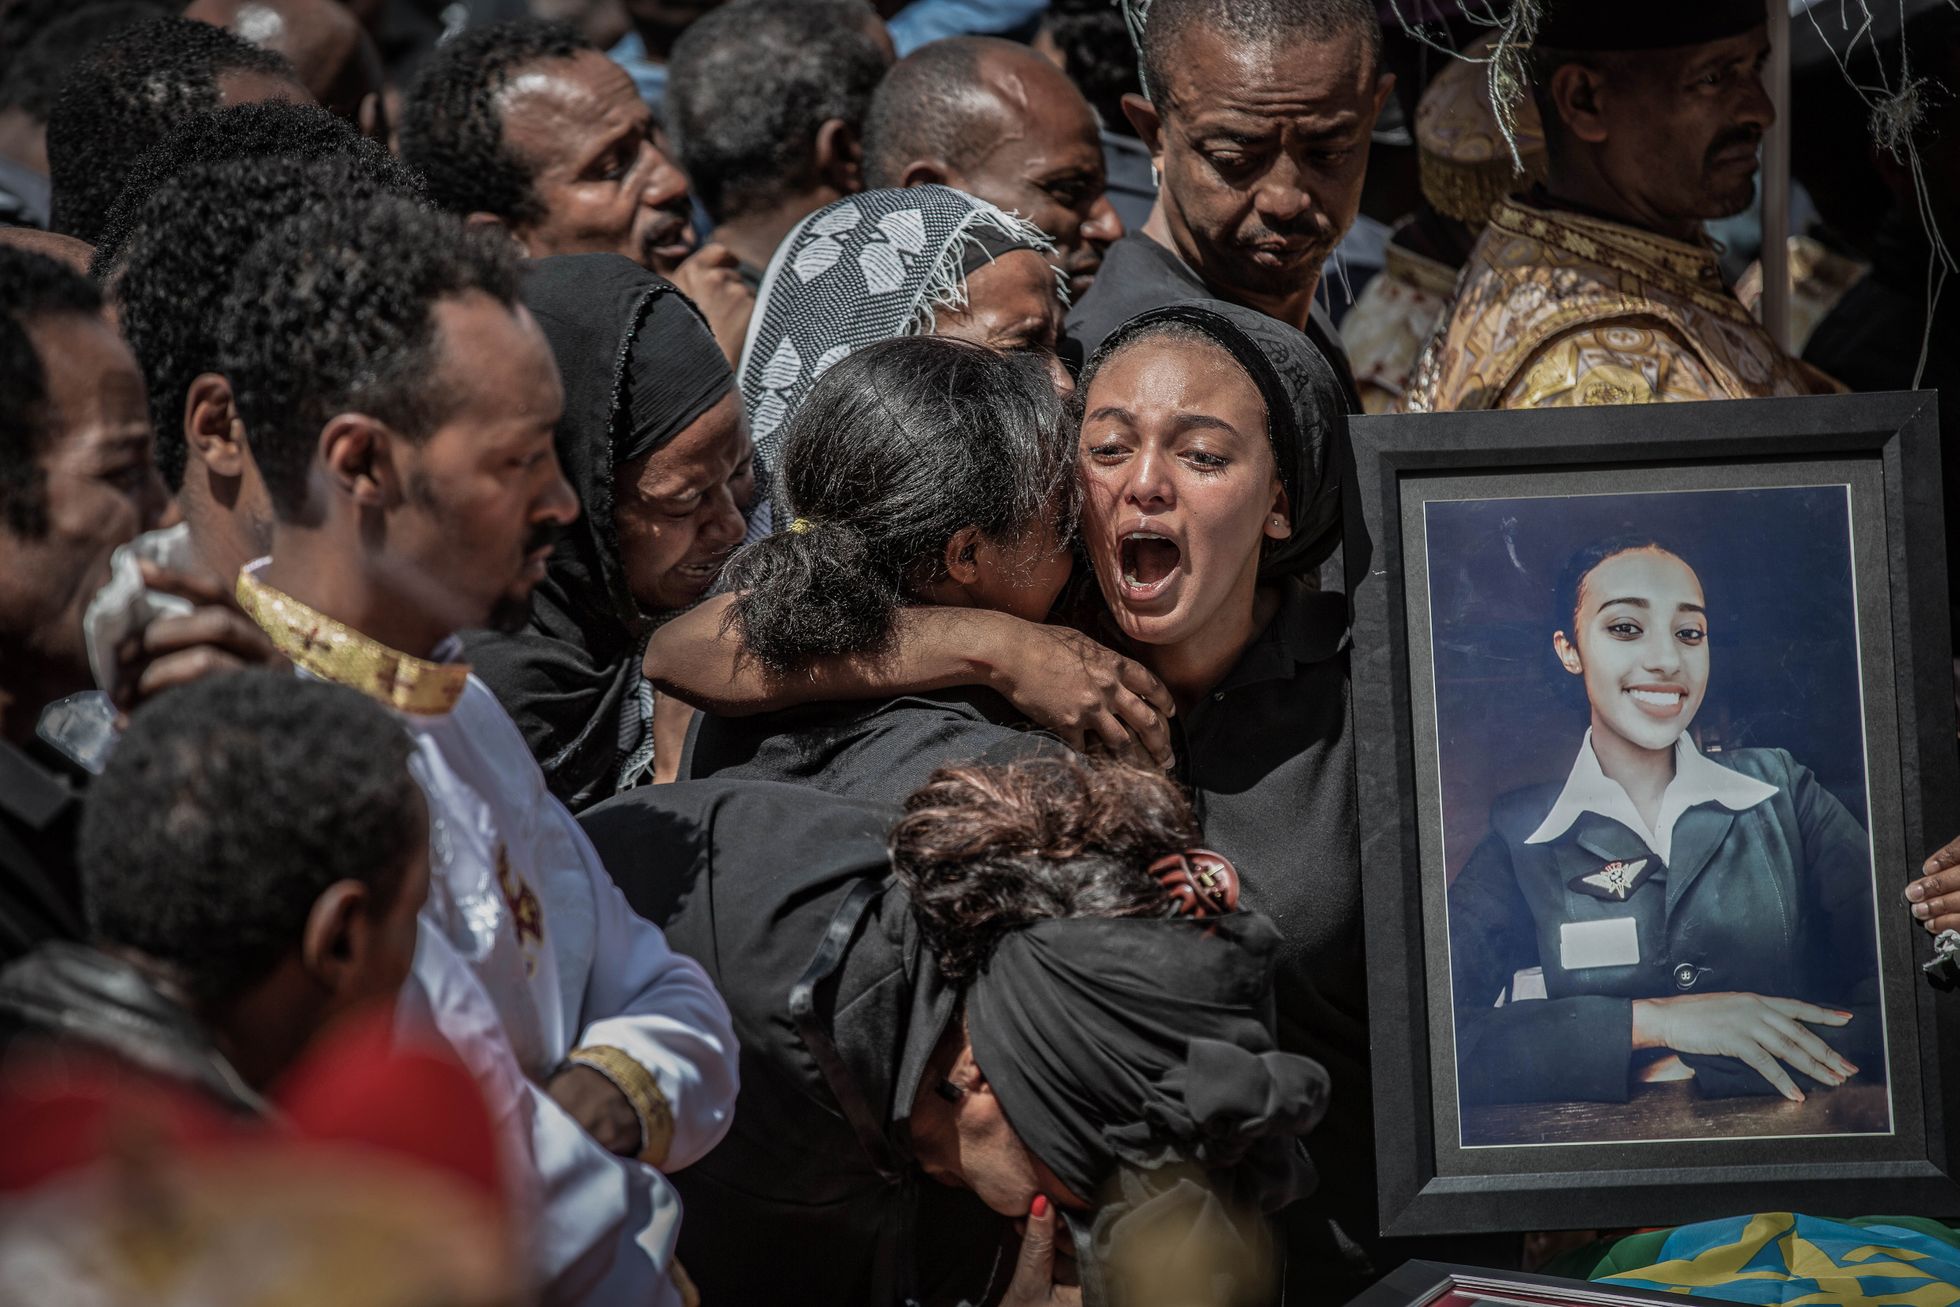 Sugulased mälestamas Etioopia lennuõnnetuses hukkunuid 17. märtsil Addis Abeba Püha Kolmainu kirikus peetud missal.